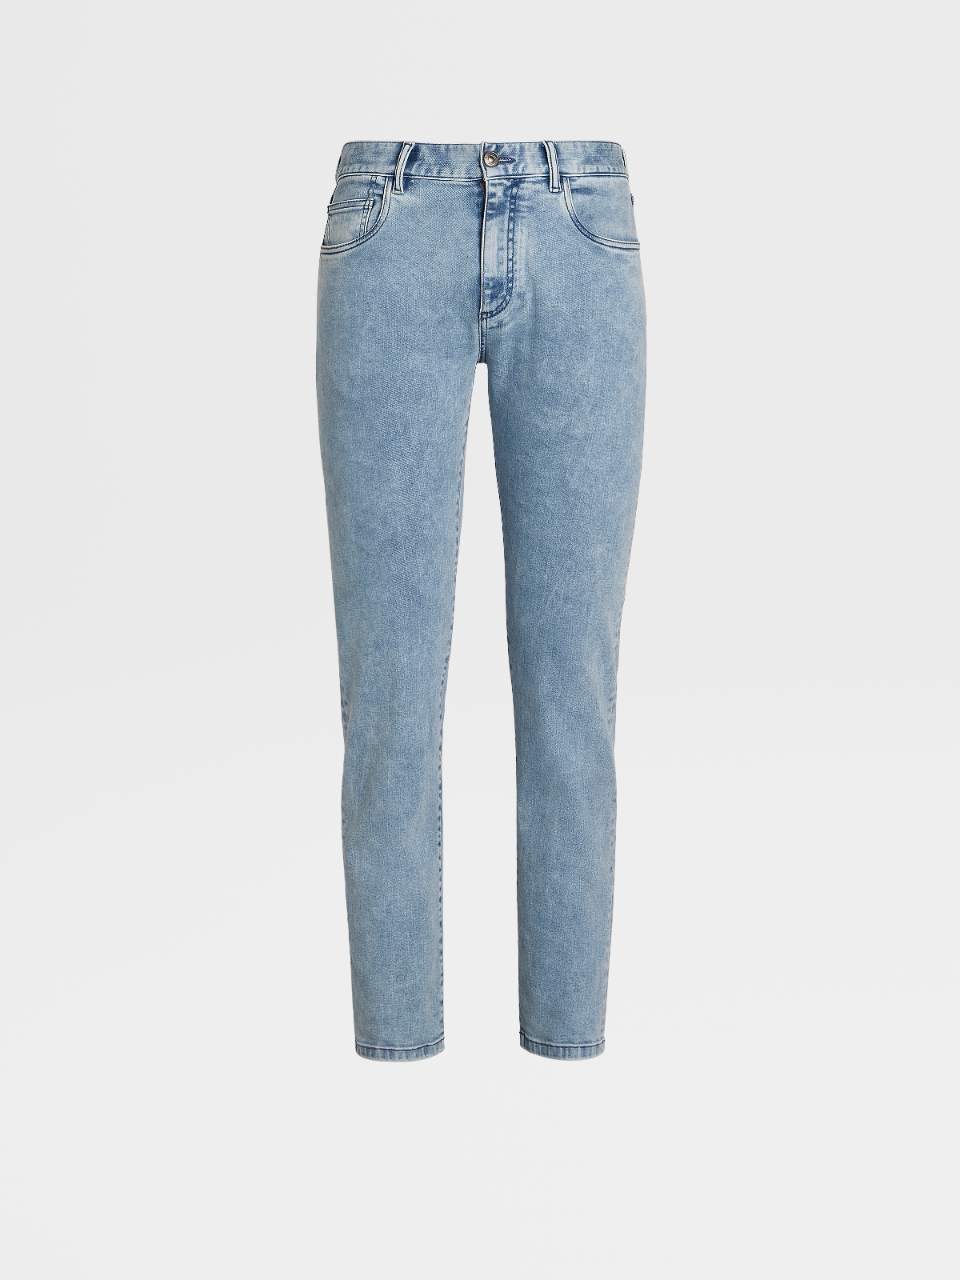 Dark Blue Stretch Cotton 5-Pocket Jeans